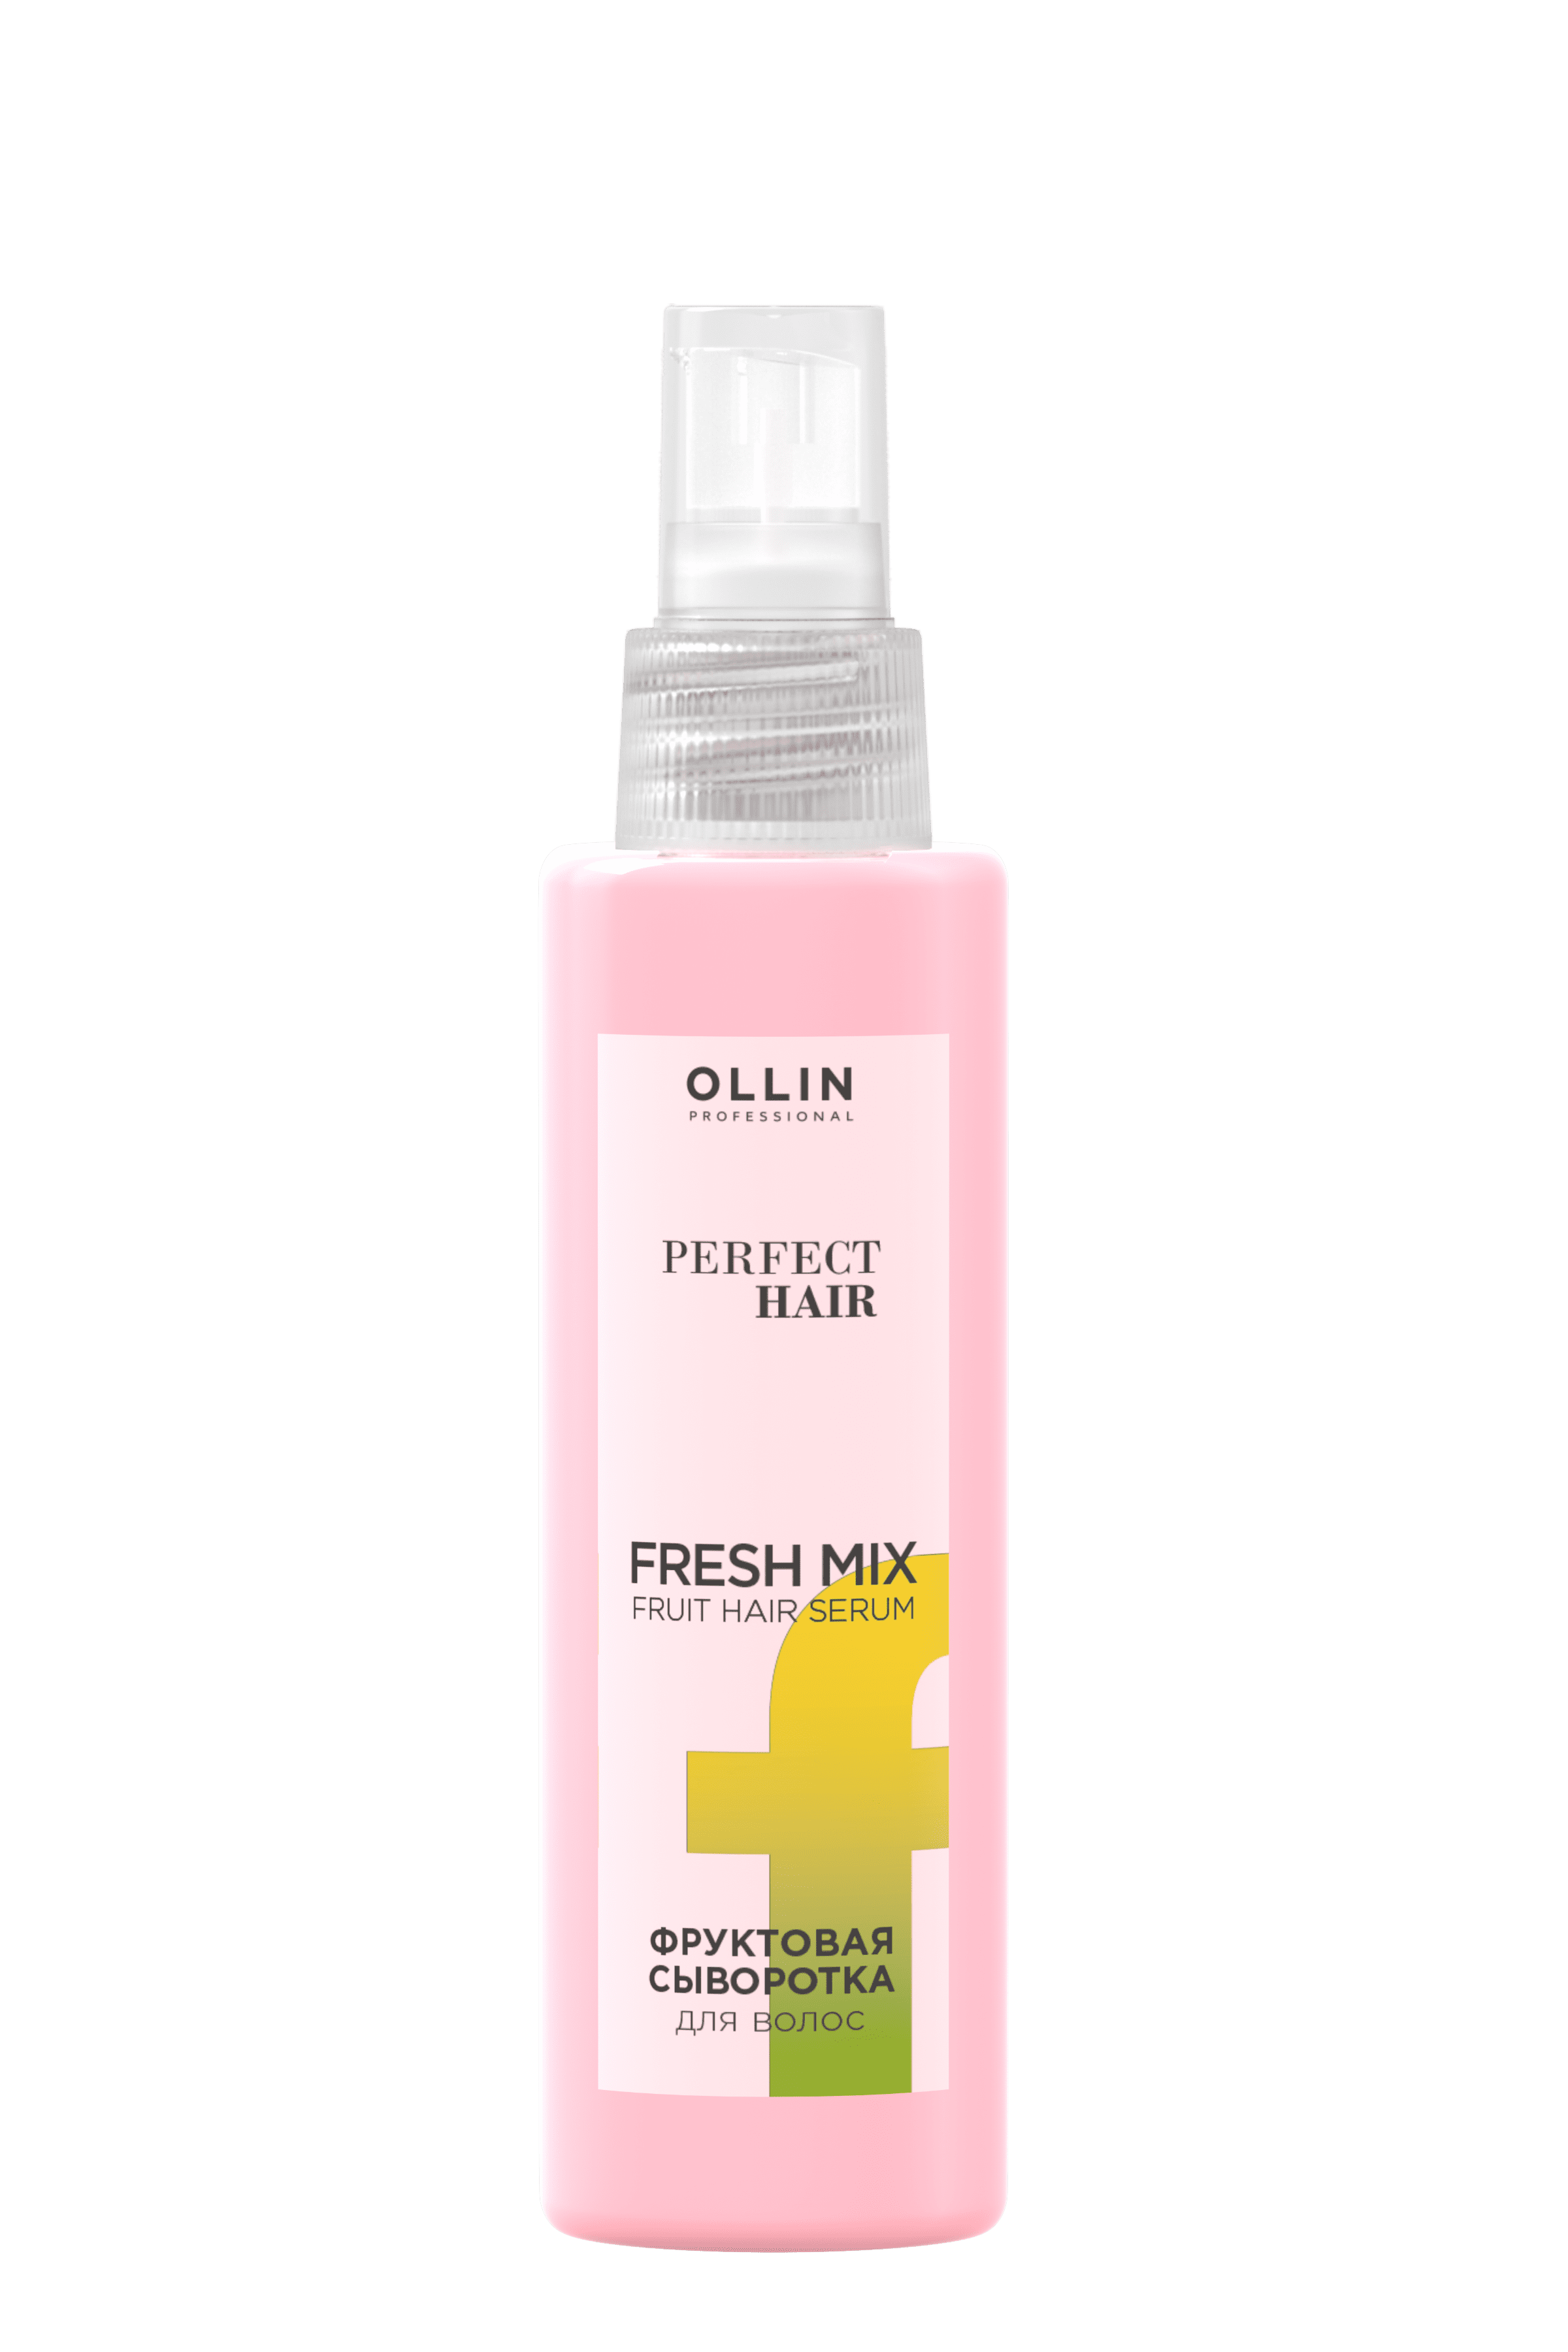 OLLIN Professional Fresh Mix фруктовая сыворотка для волос, 120 мл, спрей